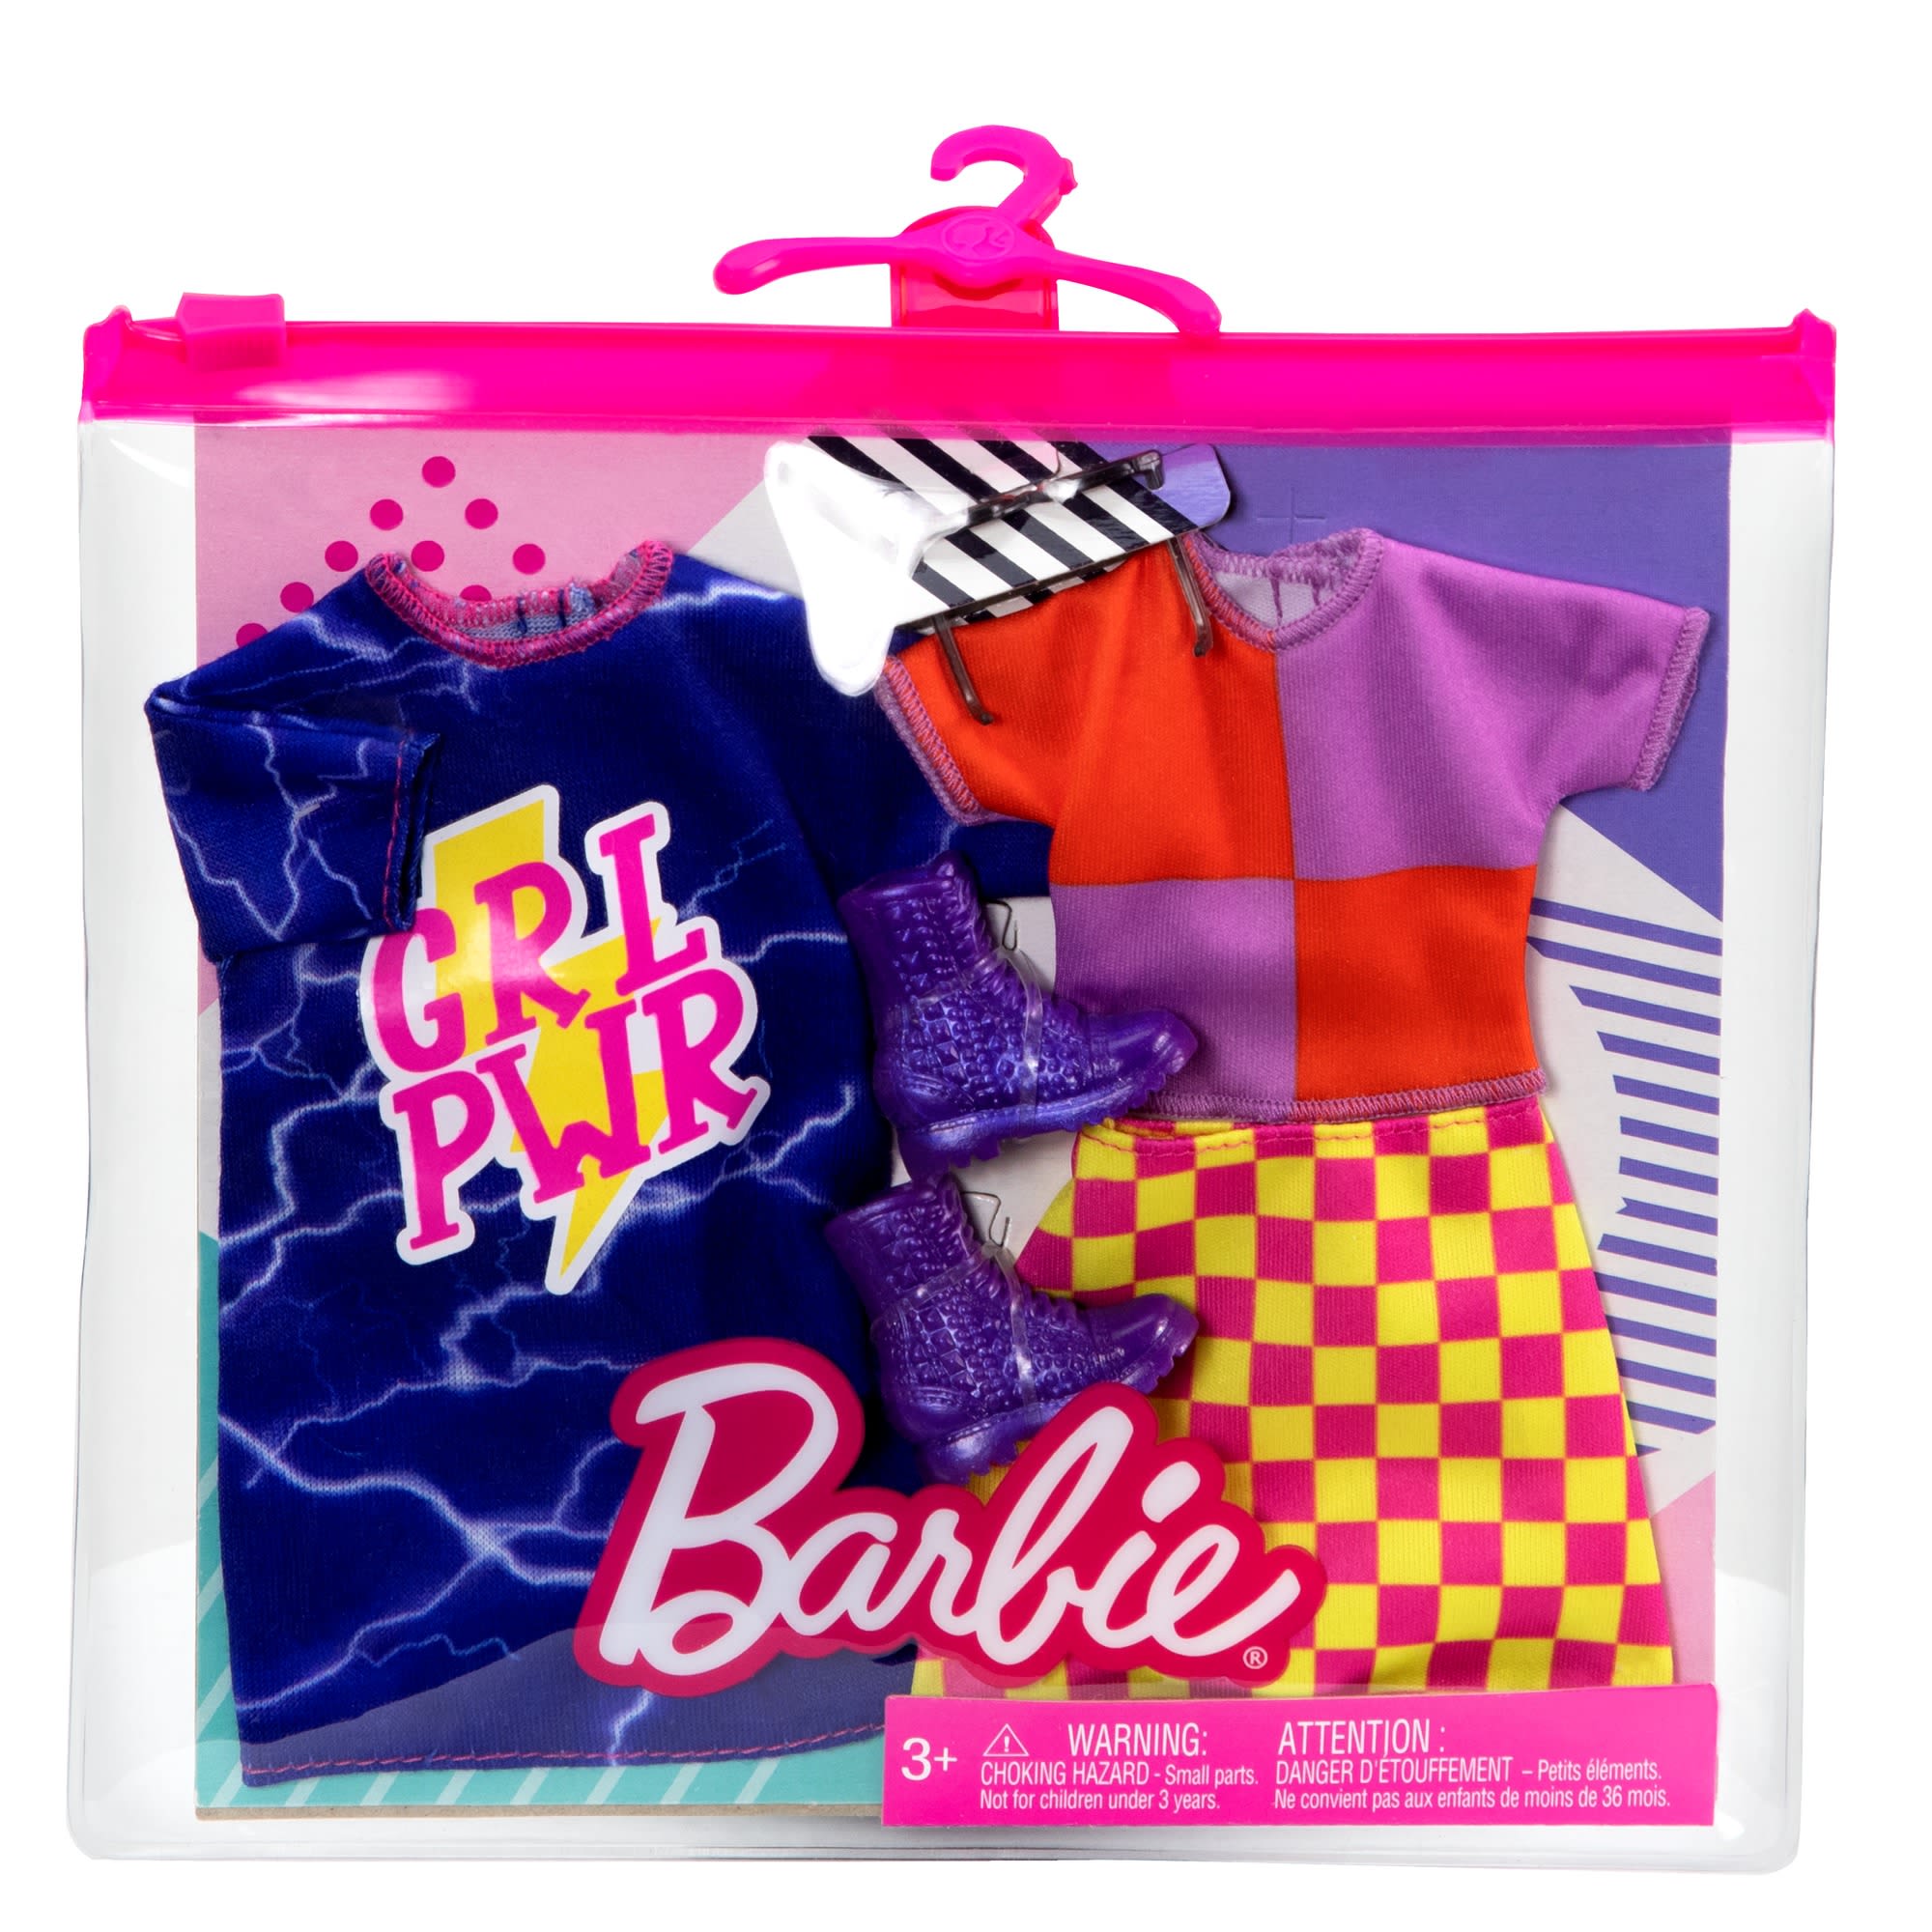 Barbie HBV69 au meilleur prix sur